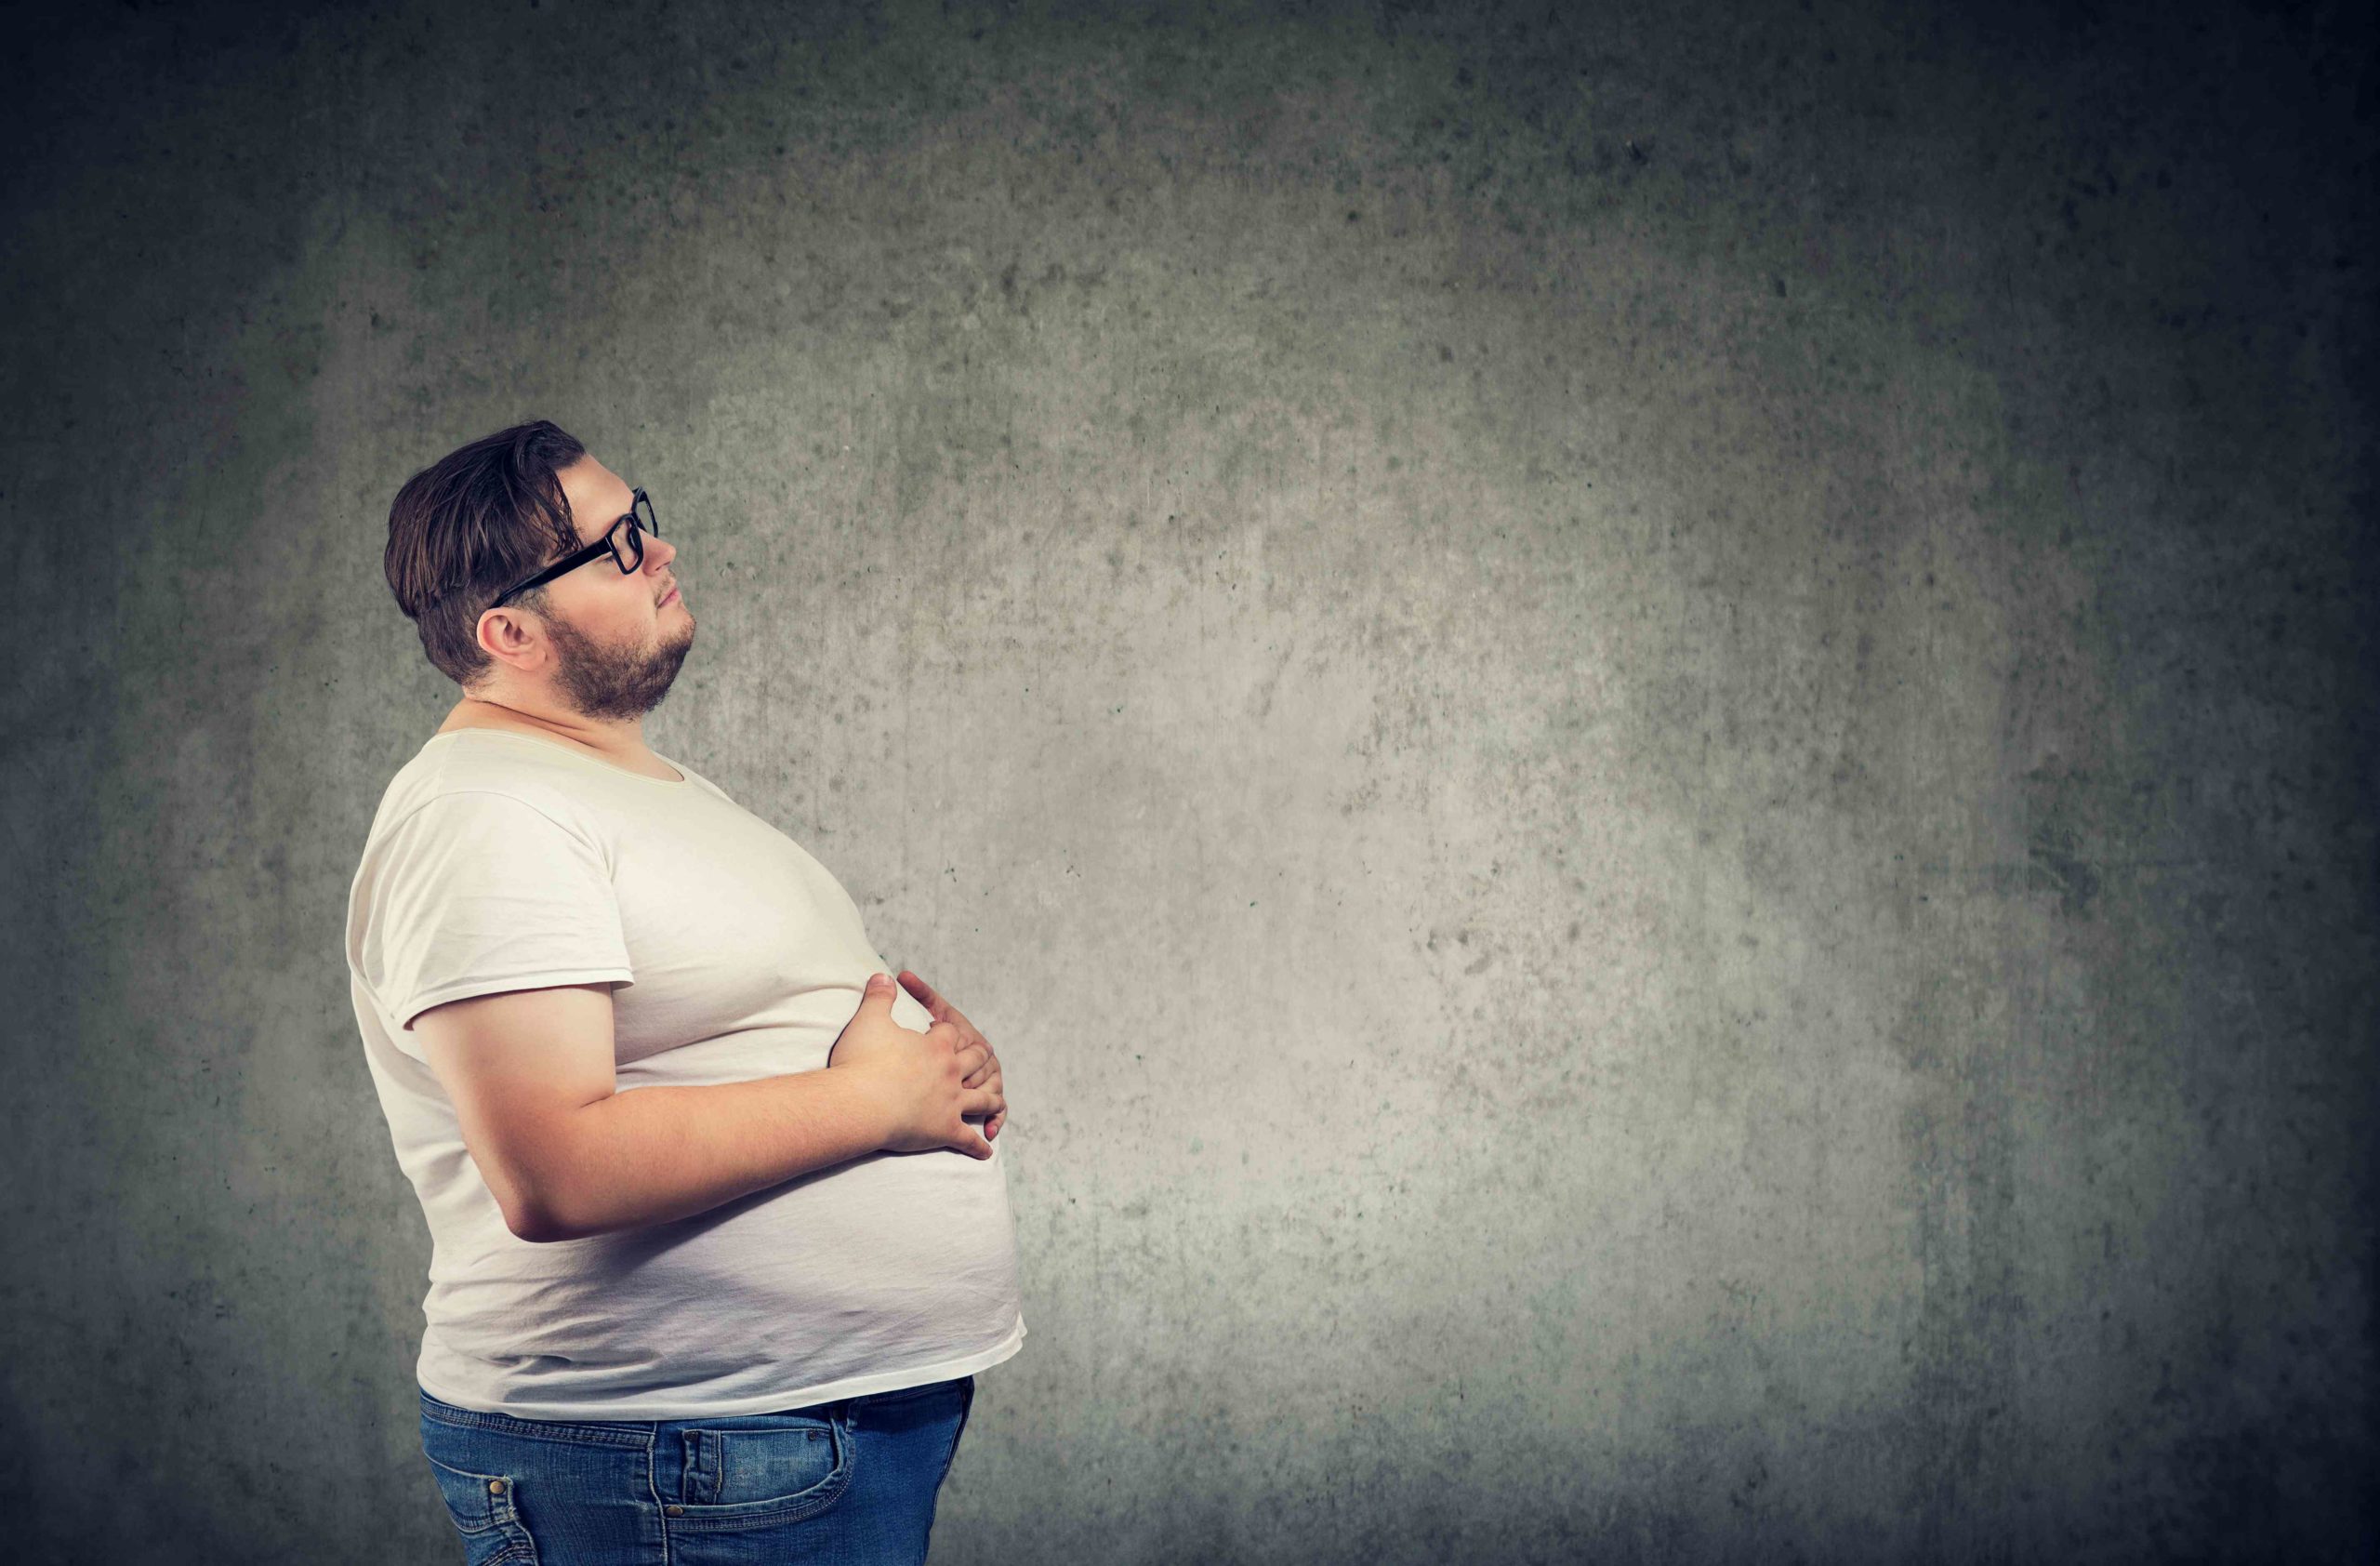 肥満が関係している生活習慣病とは 肥満の原因や予防と治療法を解説 健達ねっと